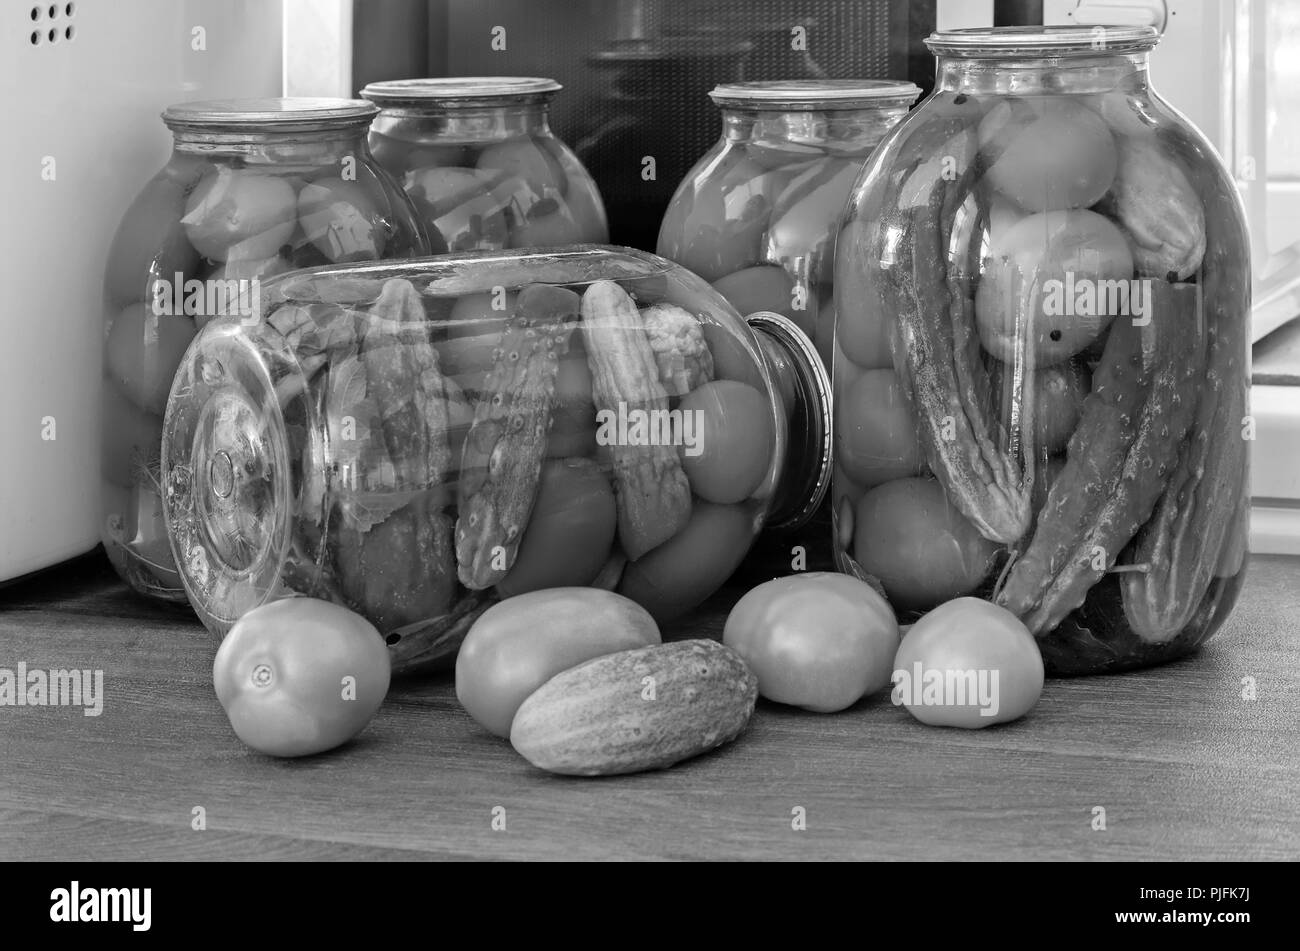 Accueil préservation : grands pots en verre rouge avec des tomates mûres et concombres, scellée. metallid Image noir et blanc. Banque D'Images